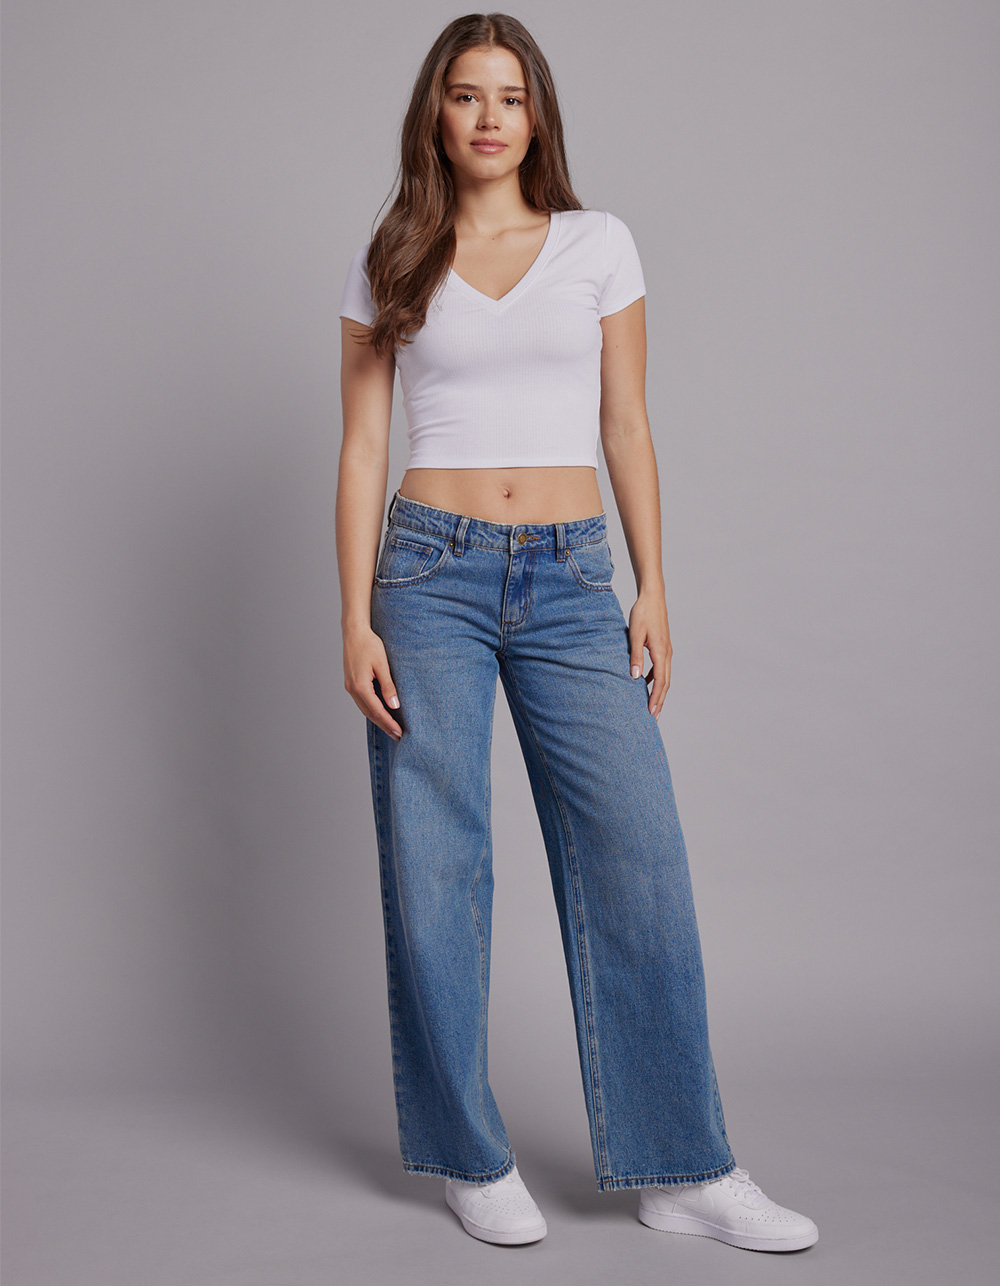 Cute Jeans & Denim for Women